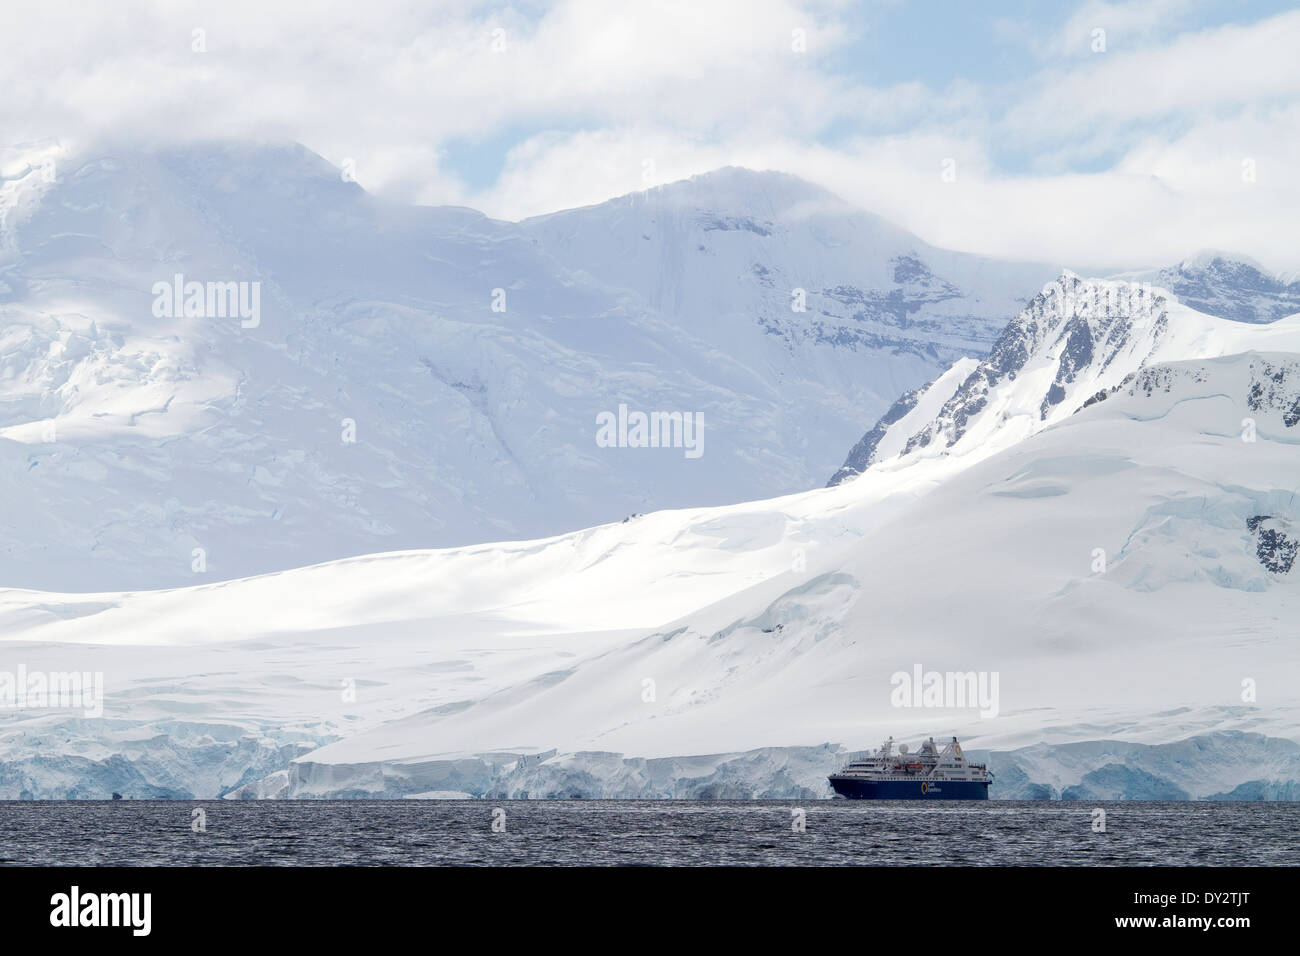 L'Antartide turismo expedition cruise ship sembra piccolo in Antartide paesaggio di montagne, montagna, Penisola antartica. Foto Stock